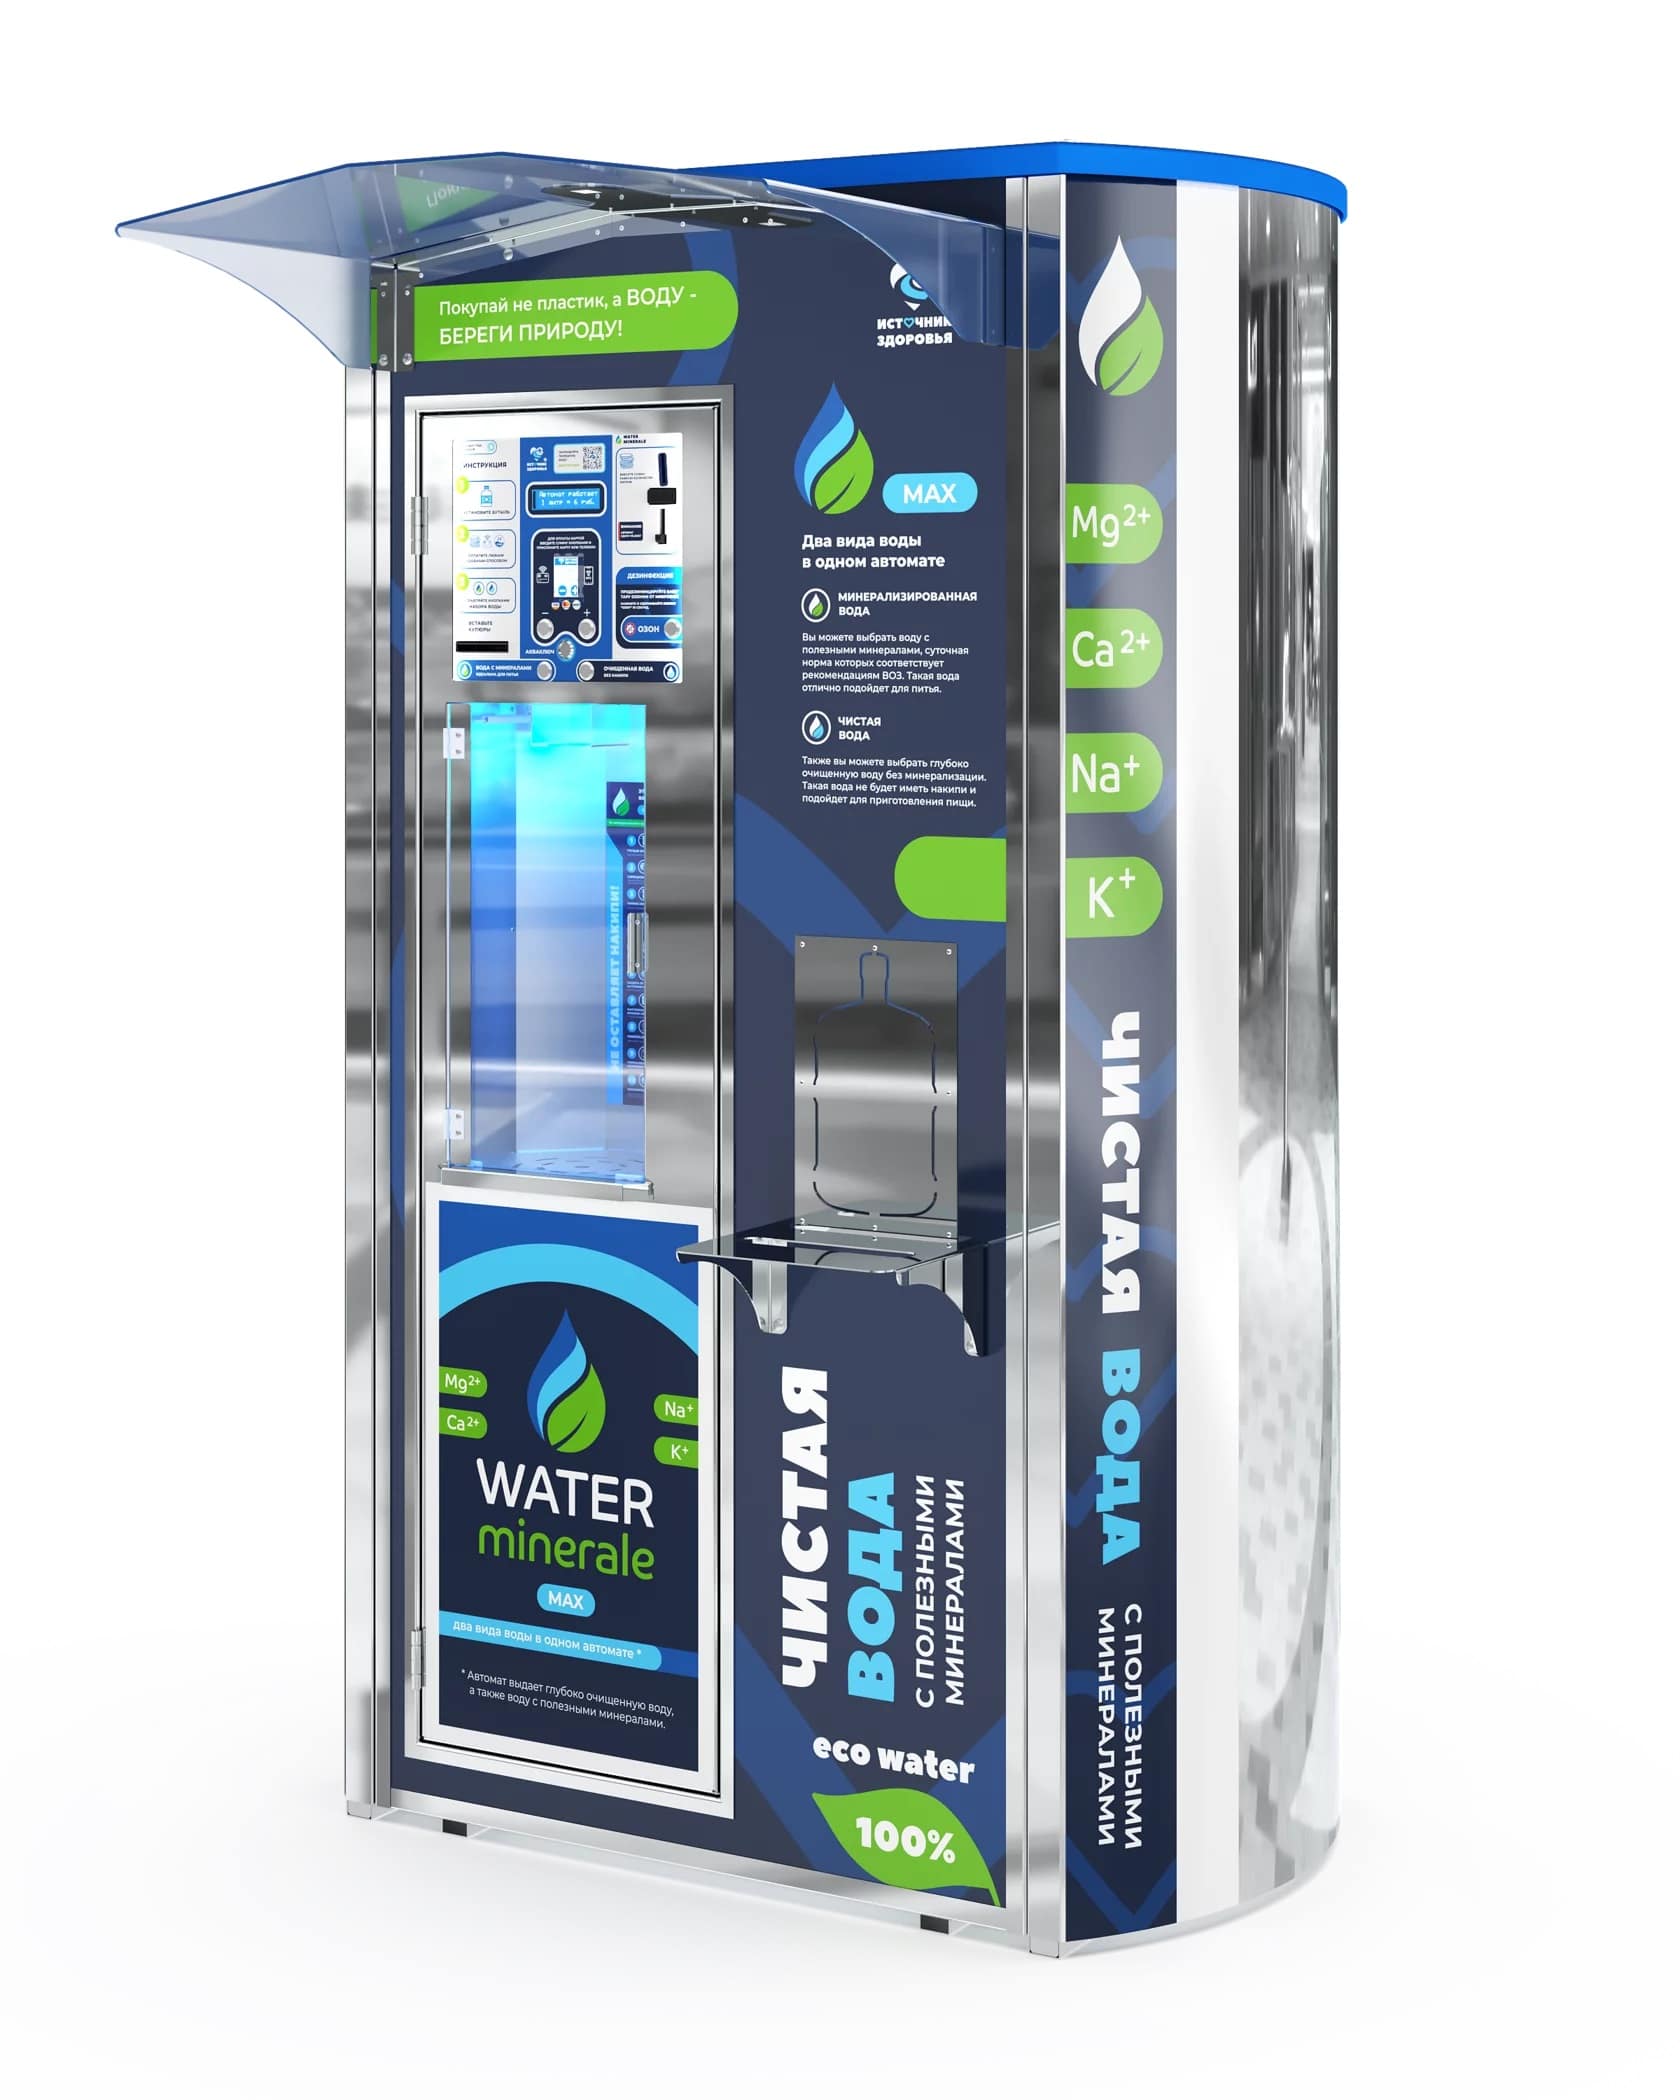 Автомат фильтр воды. Автомат по продаже воды. Автомат по розливу воды. Источник здоровья водоматы Water minerale Mini Pro. Аквамани ру.